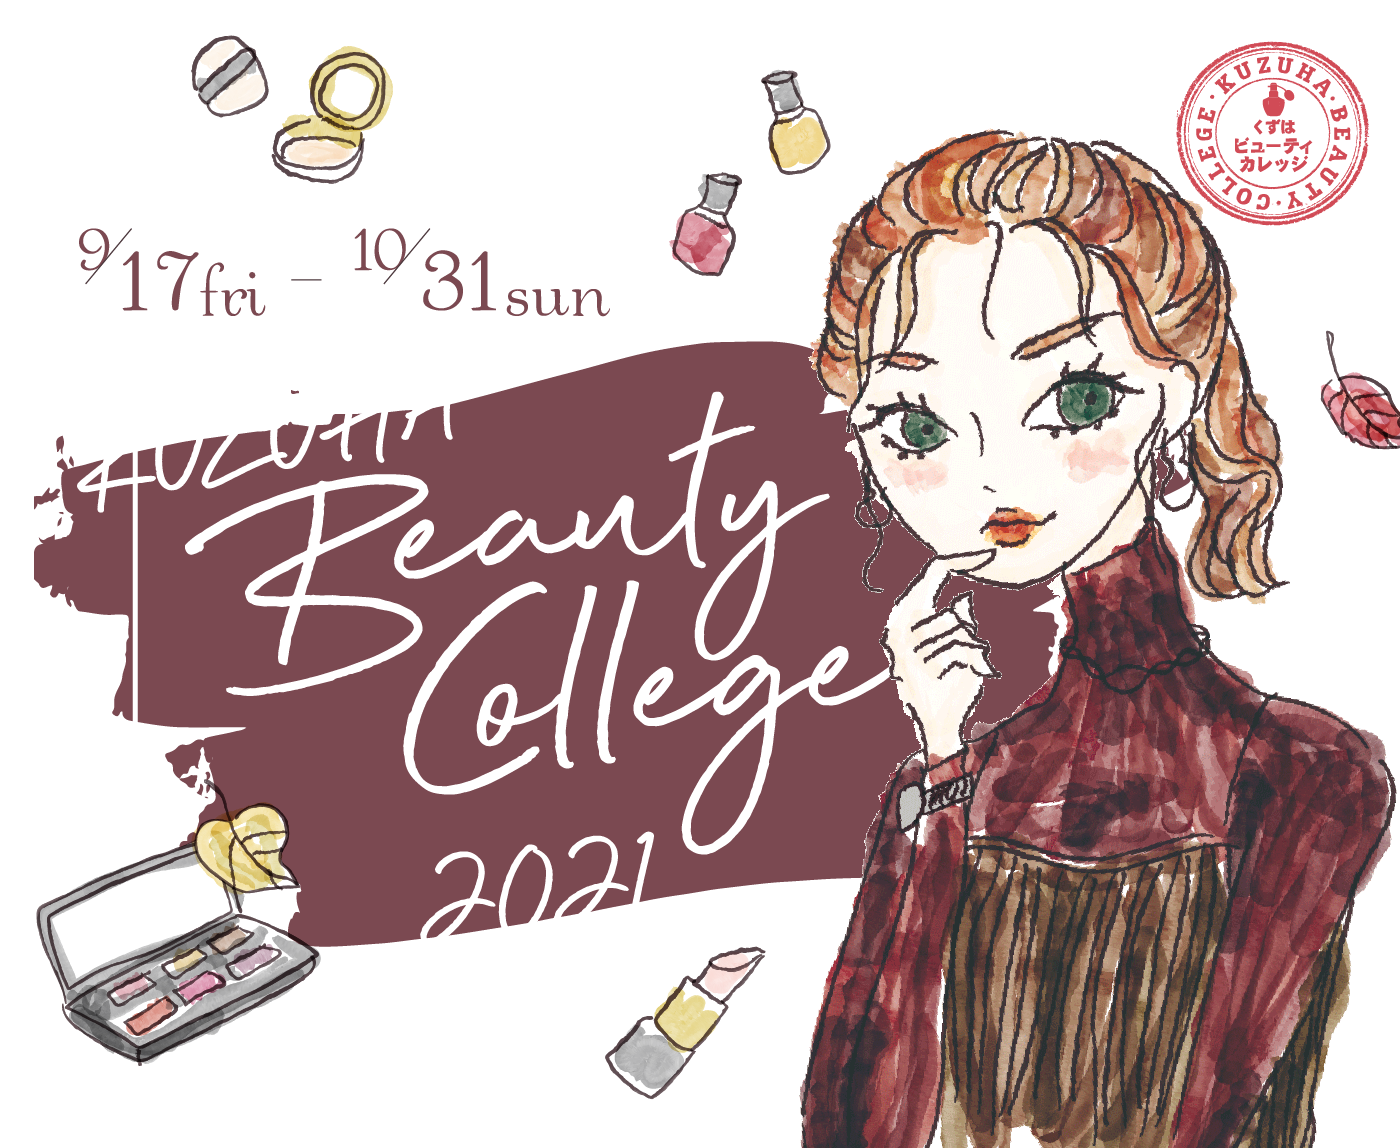 9/17 fri - 10/31 sun KUZUHA Beauty College 2021 くずはビューディーカレッジ